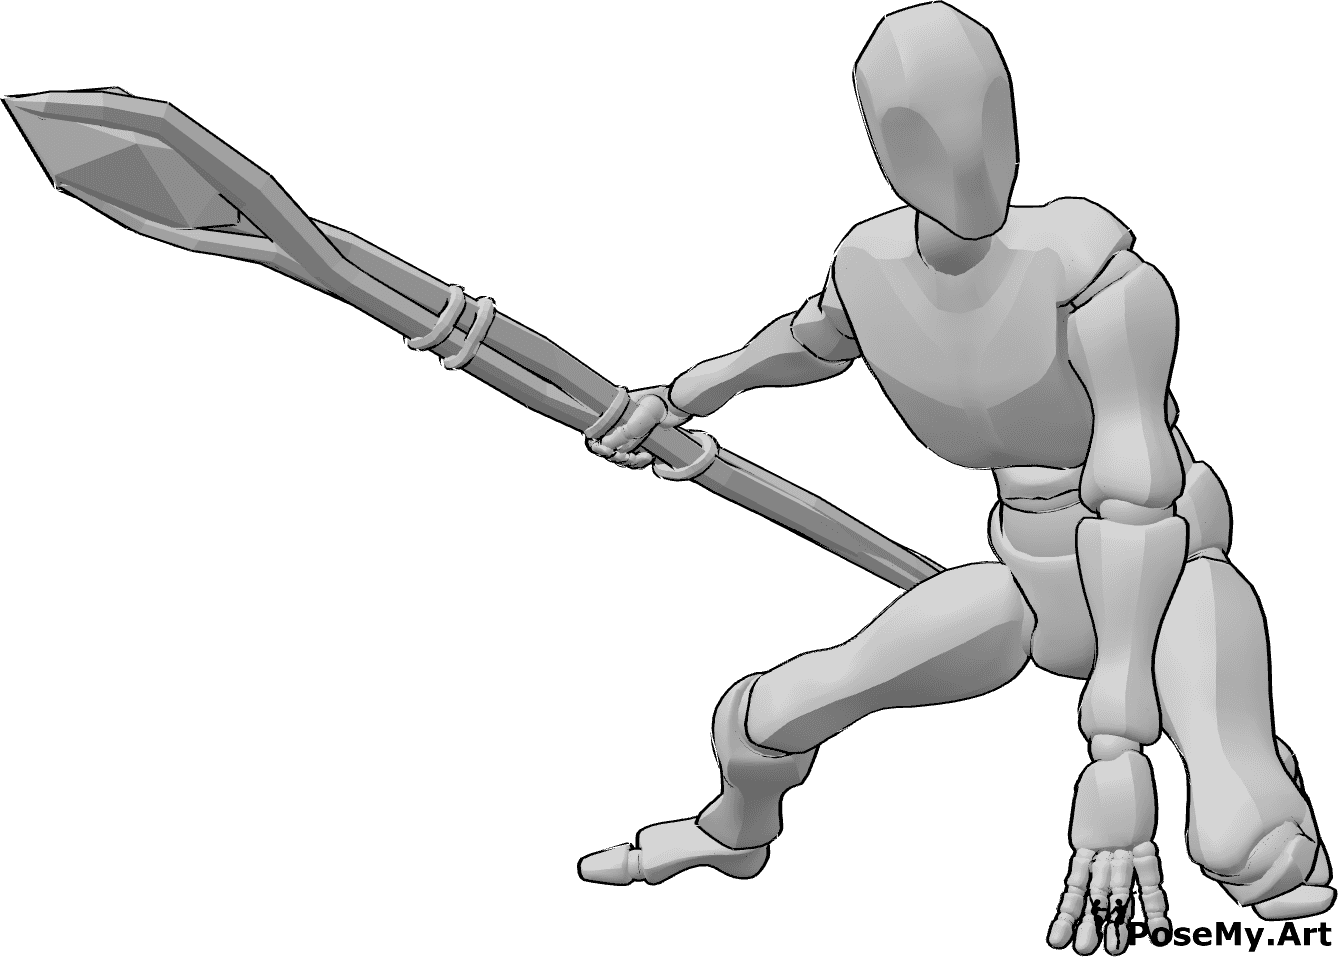 Referencia de poses- Postura del bastón de mando - Male está aterrizando, sosteniendo un bastón mágico en su mano derecha, mirando a la izquierda